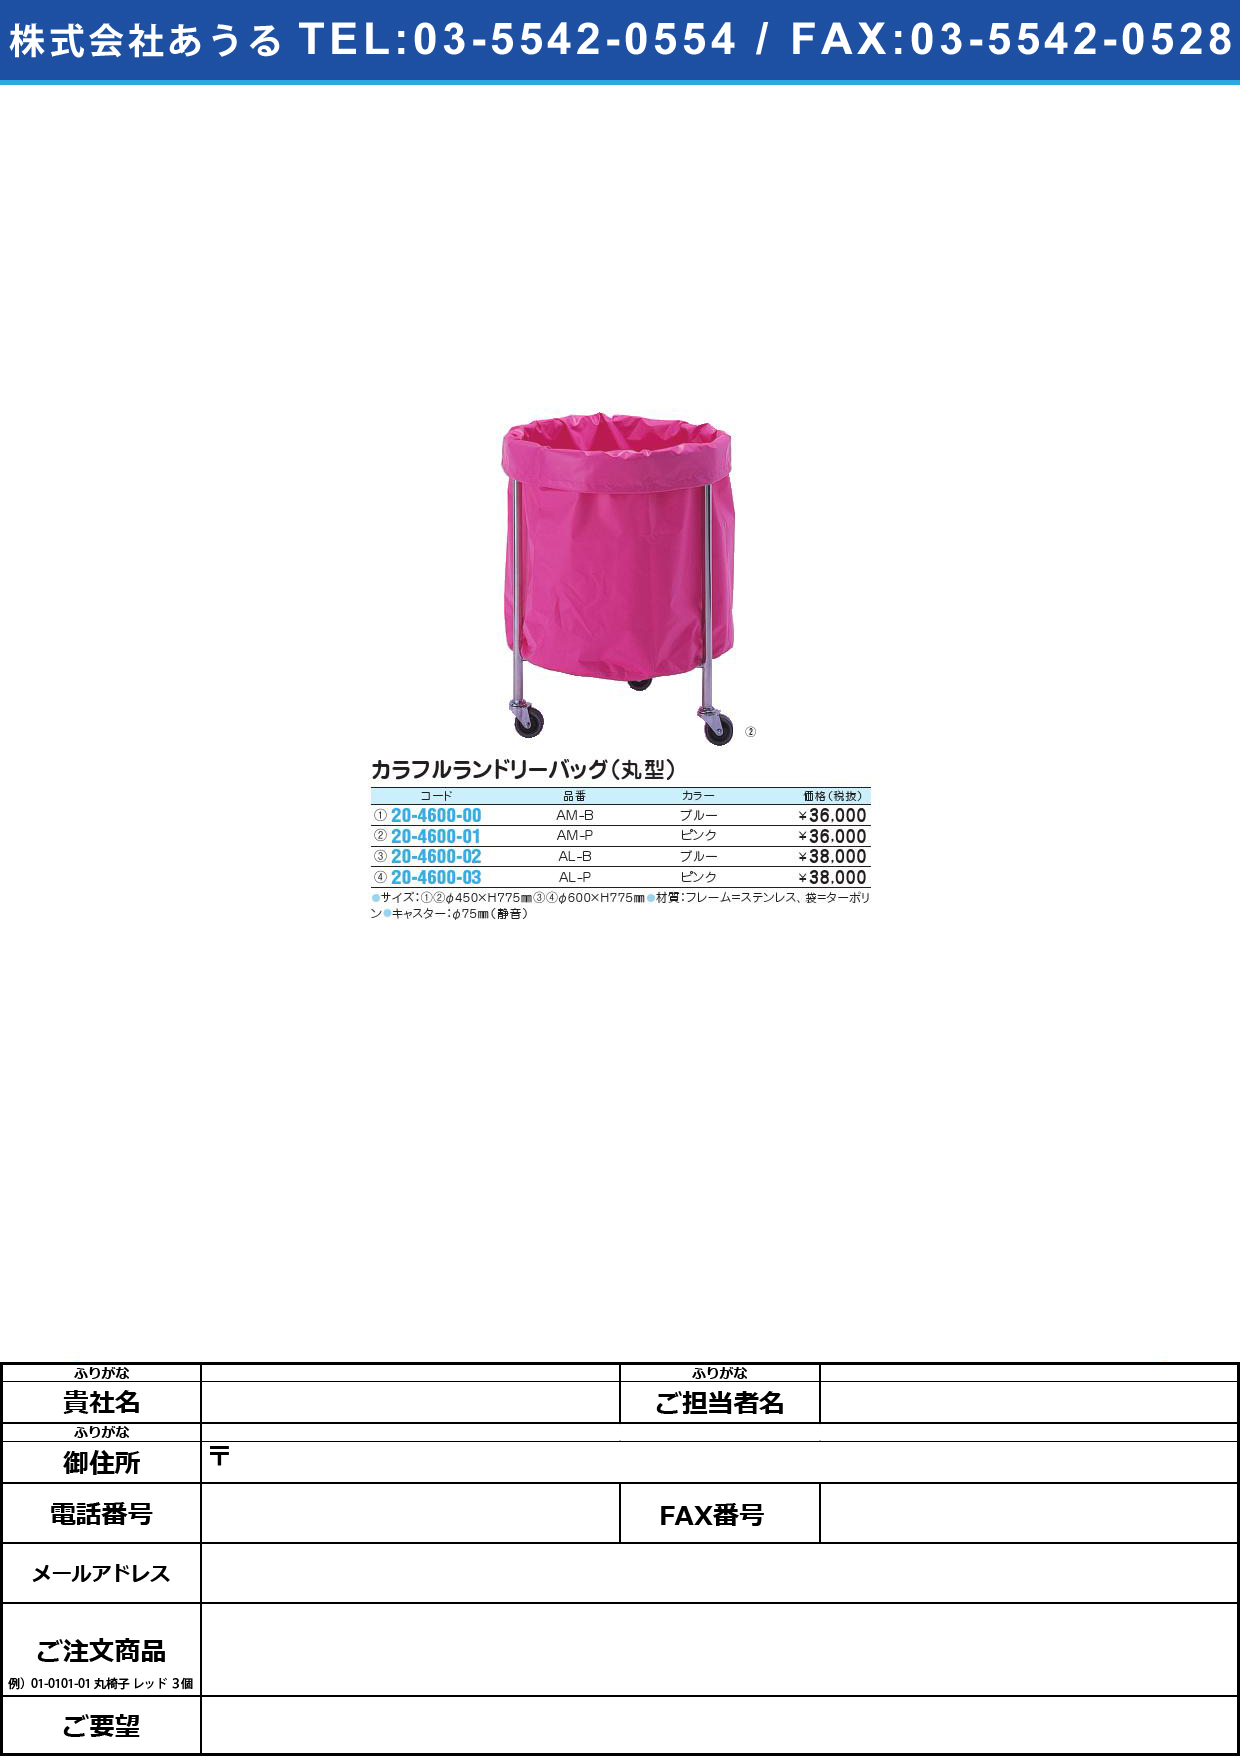 カラフルランドリーバッグ（丸型） SK-248･AM-P(ﾋﾟﾝｸ)ｶﾗﾌﾙﾗﾝﾄﾞﾘｰﾊﾞｯｸﾞﾏﾙｶﾞﾀ(20-4600-01)【1台単位】